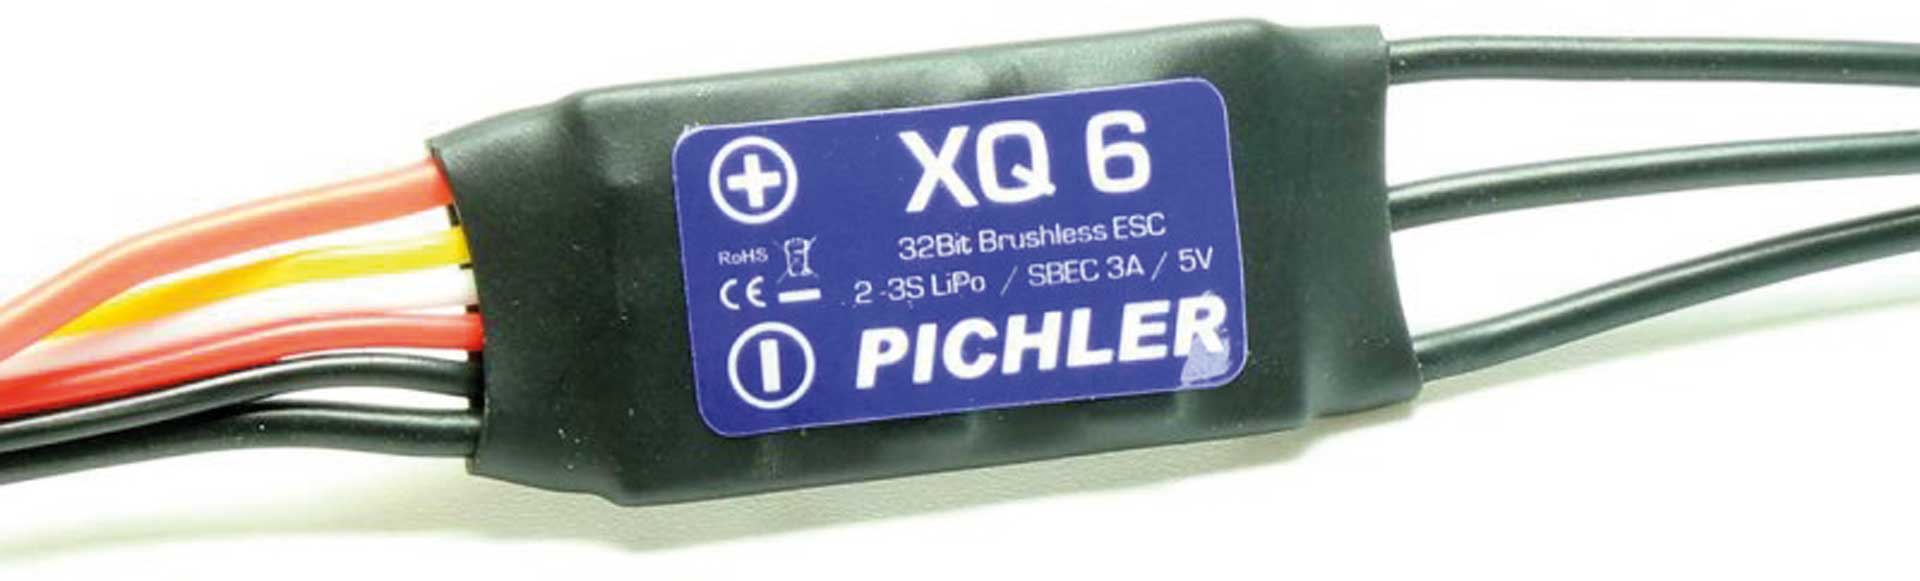 PICHLER Brushless Regler XQ+ 6